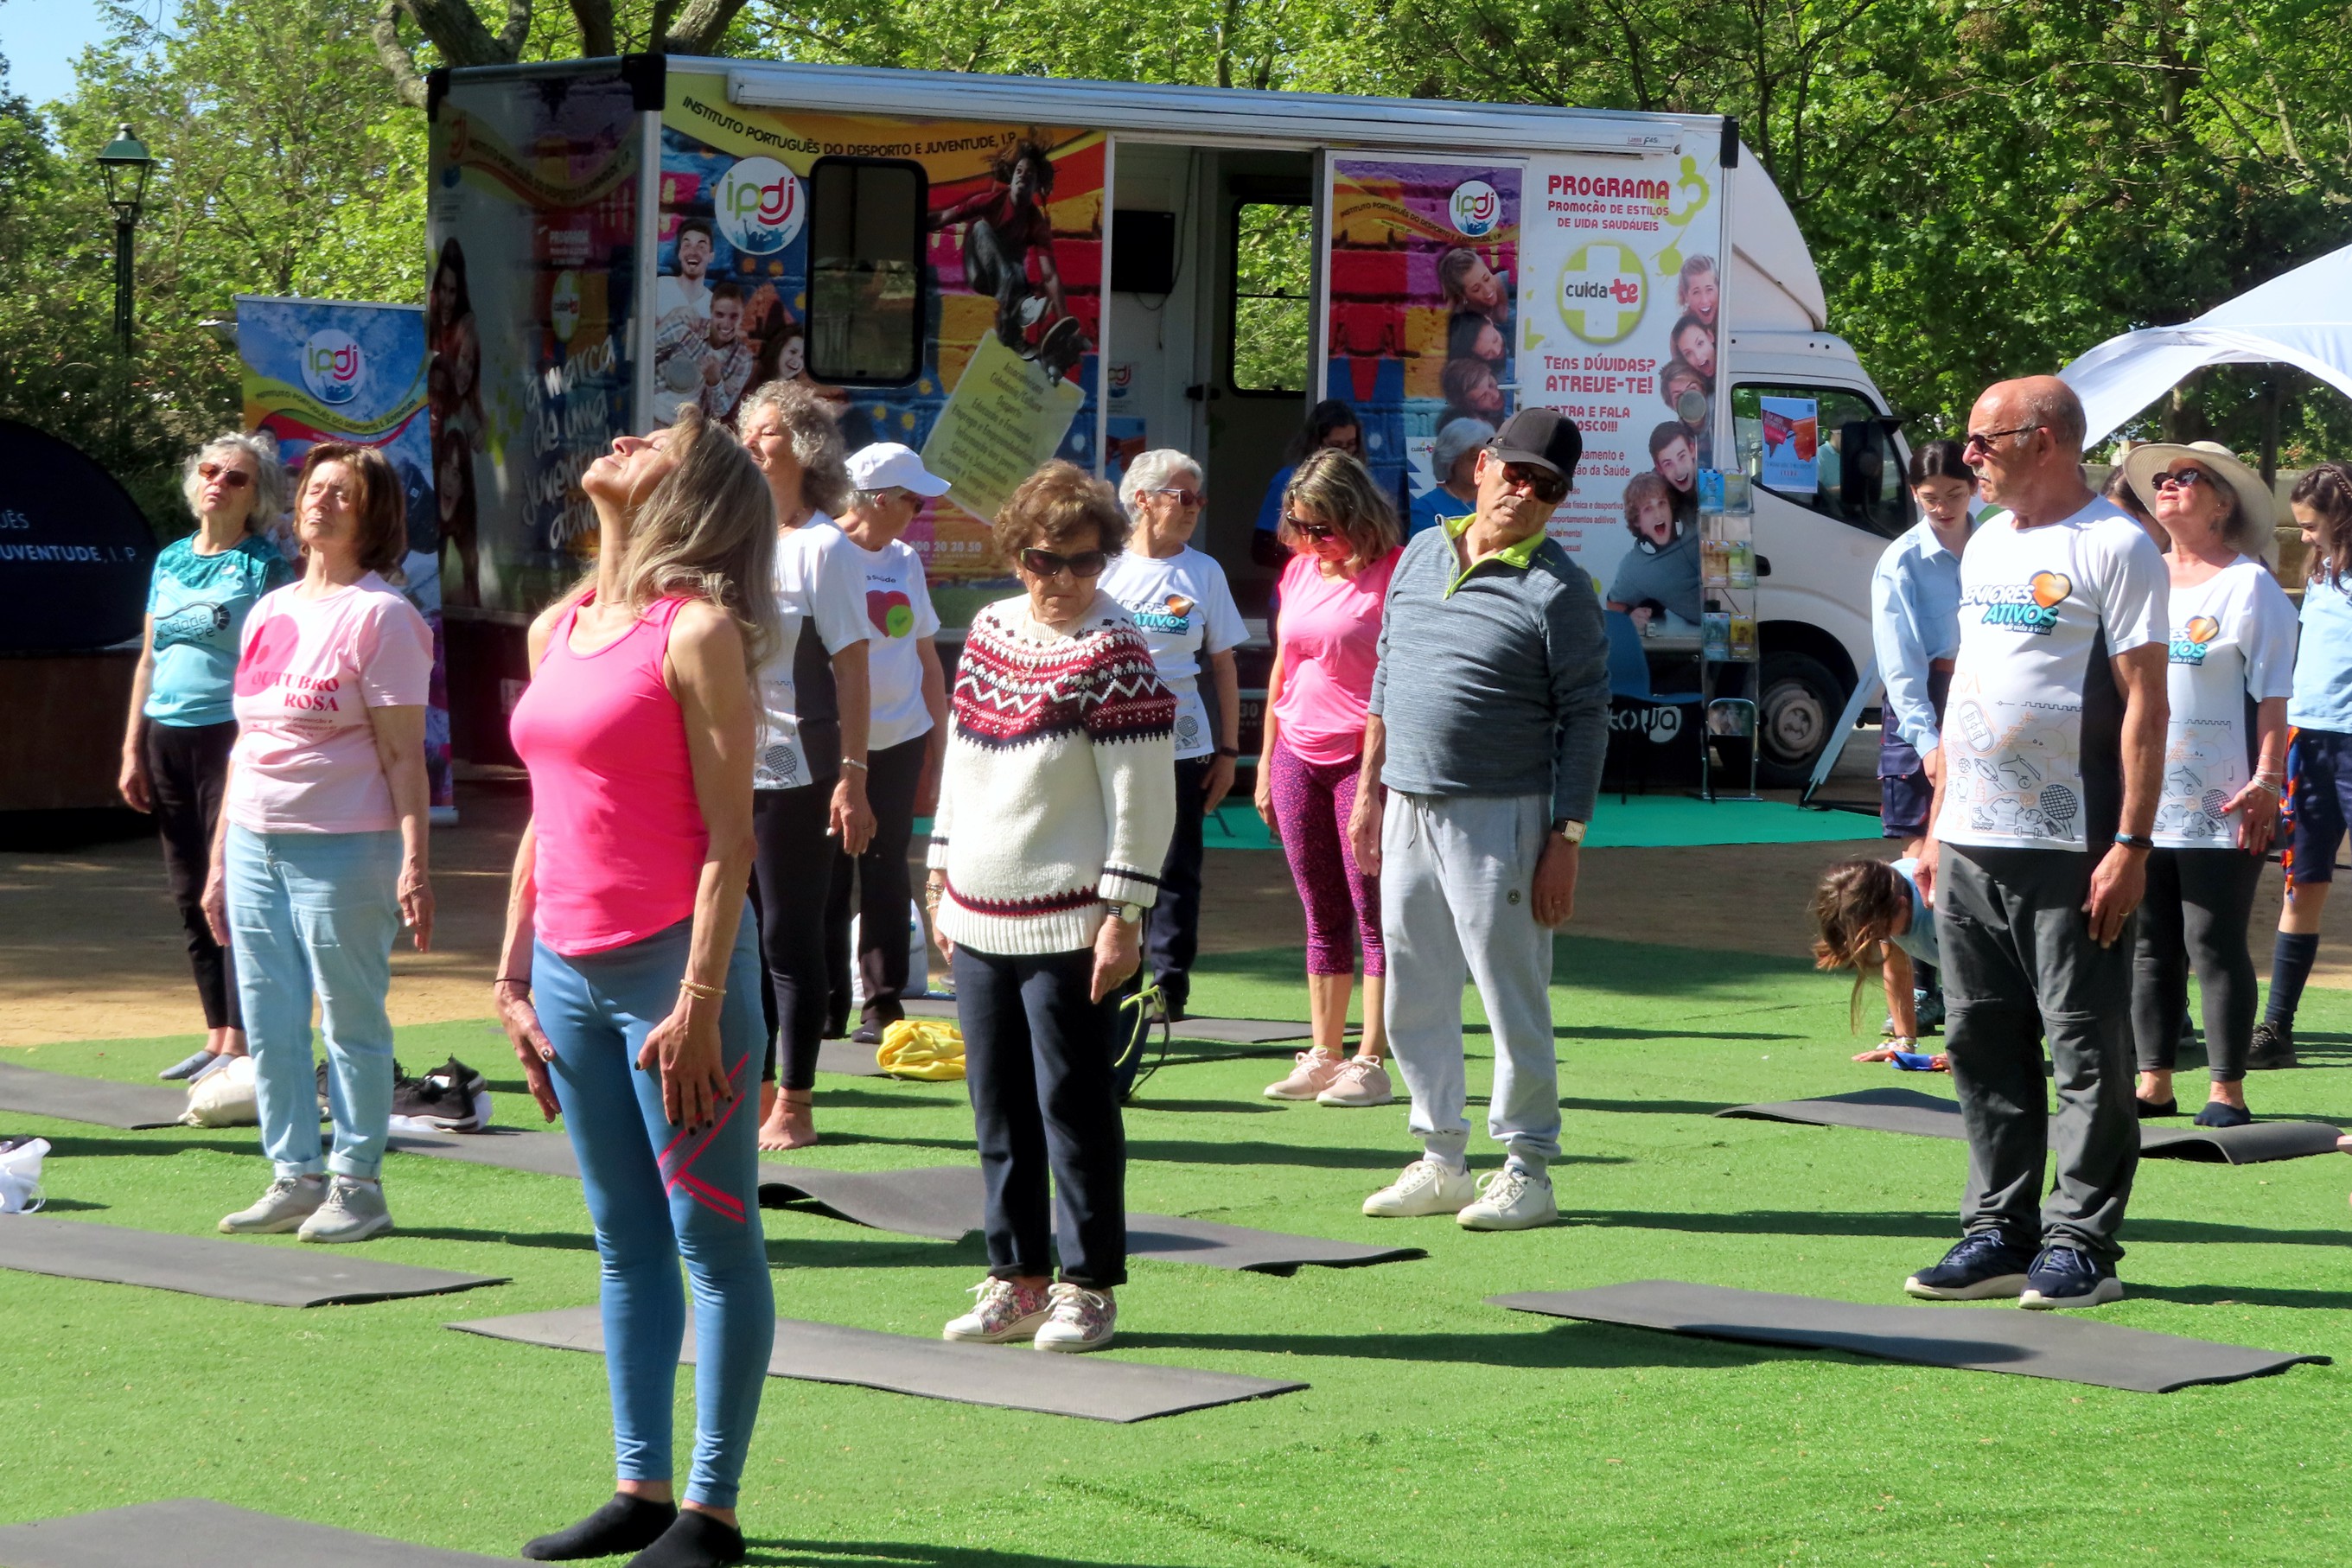 Grupo de pessoas no Jardim Público de Évora, a participarem numa atividade física, junto à Unidade Móvel Cuida-te+.